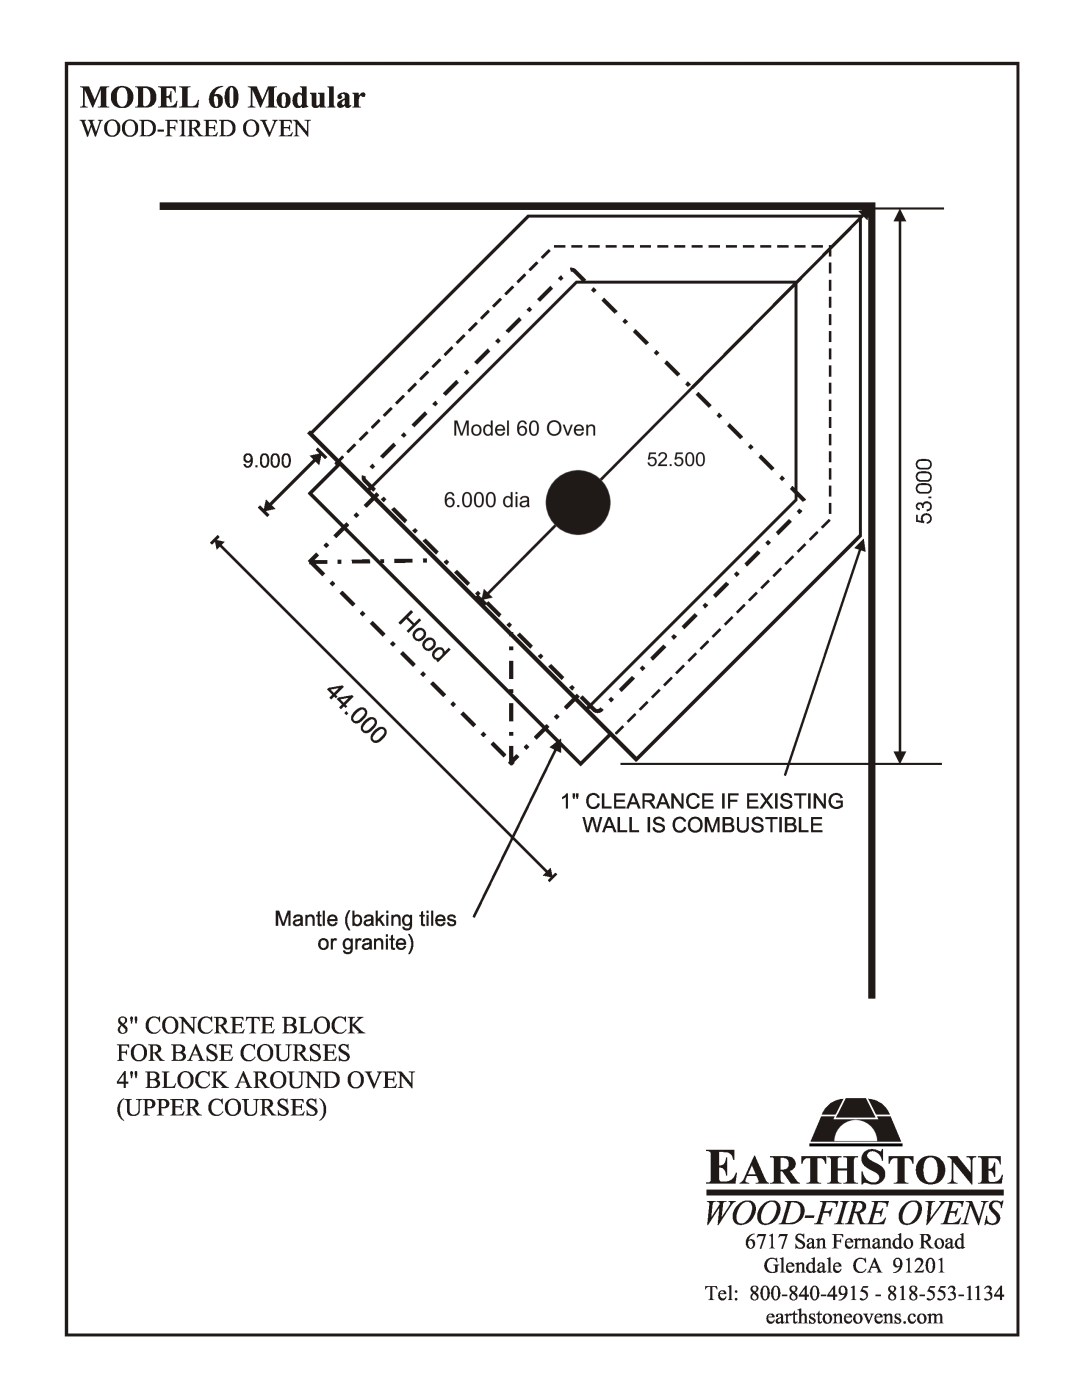 EarthStone 60 Modular Concrete Block, For Base Courses, Block Around Oven, Upper Courses, Earthstone, Wood-Fireovens, Tel 